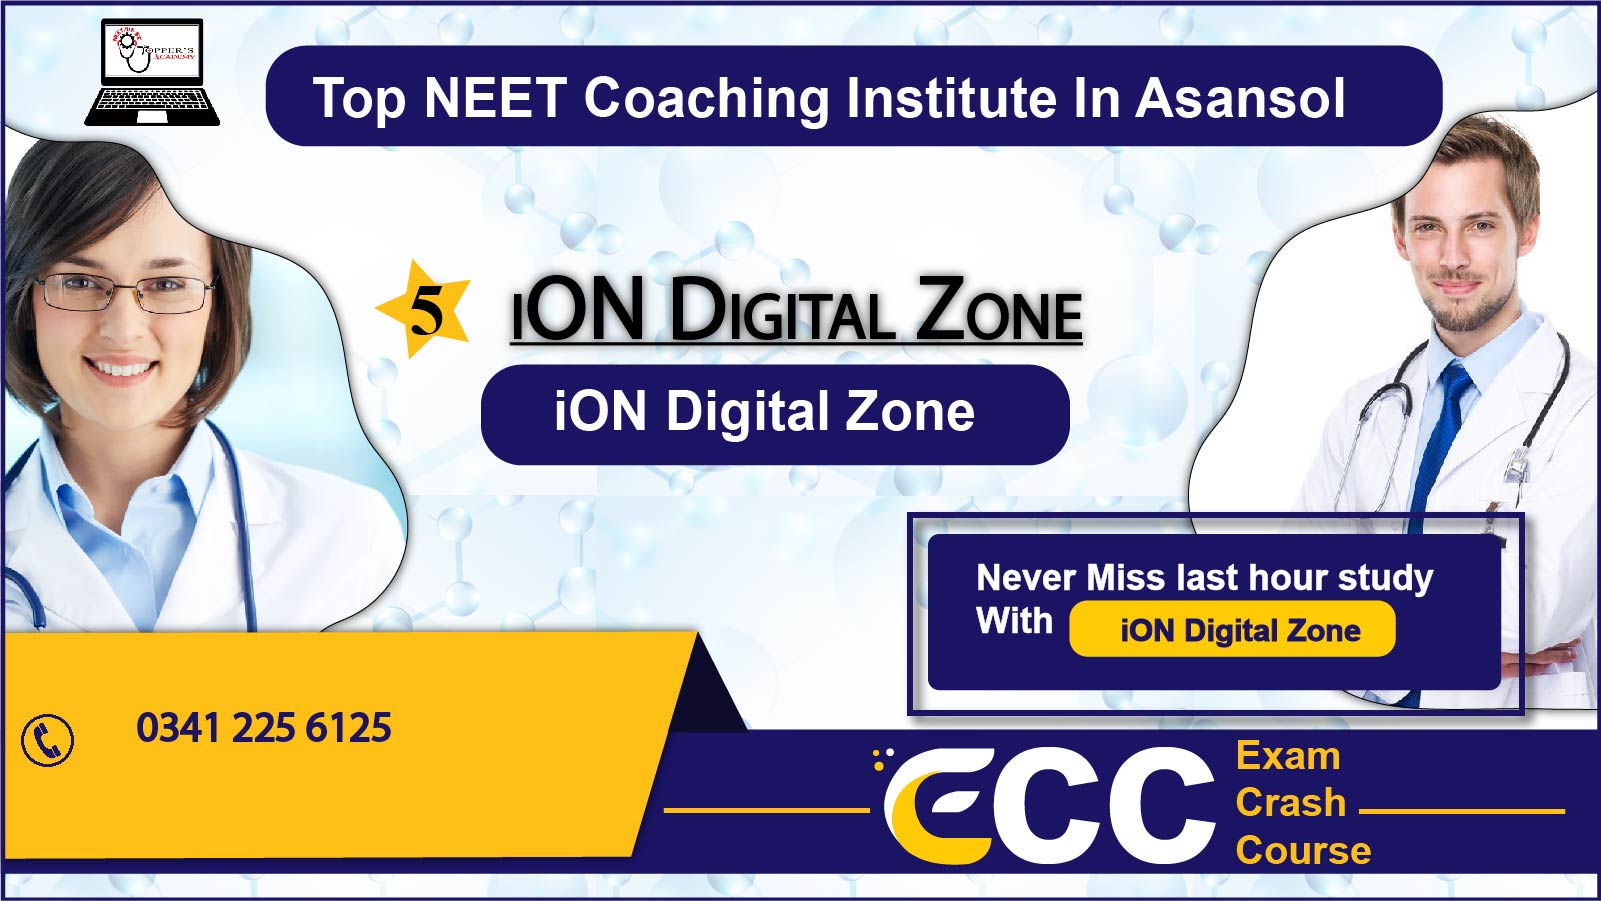 iON Digital Zone NEET Coaching in Asansol